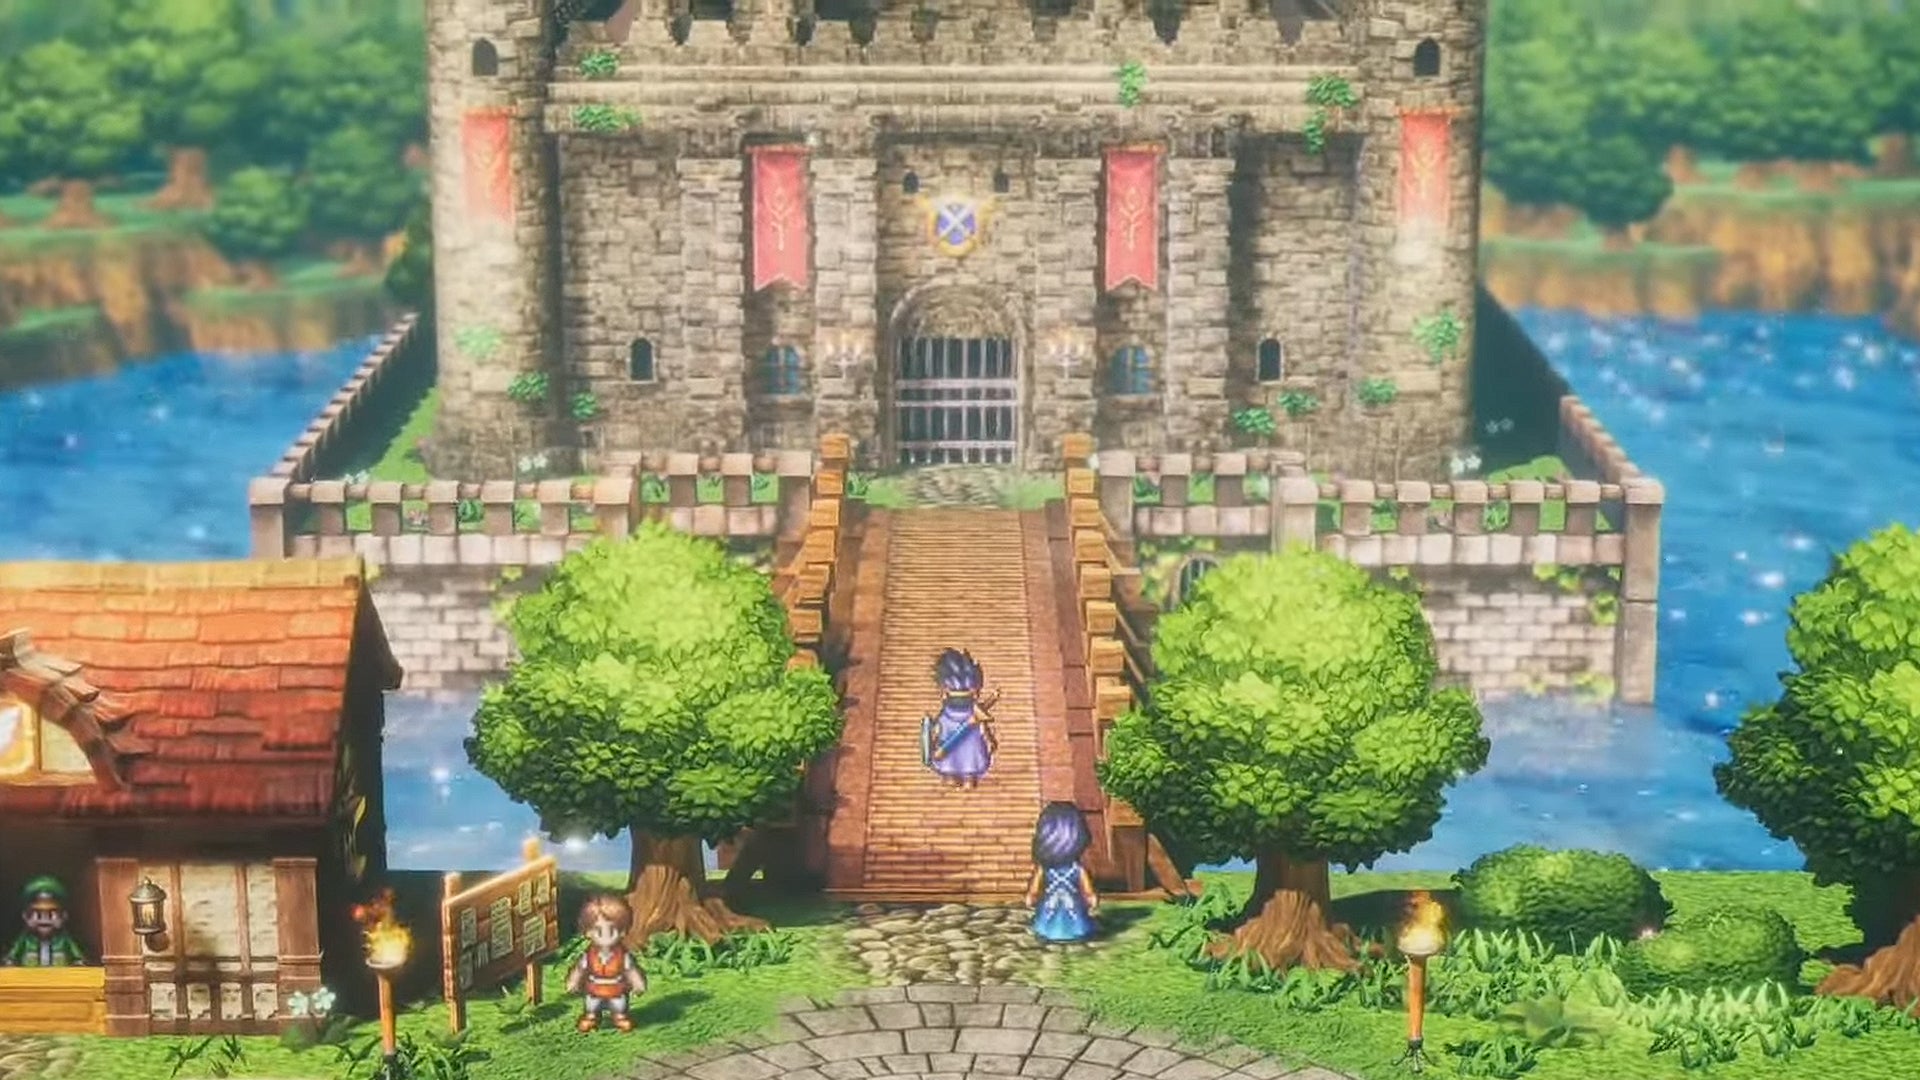 Ремейк Dragon Quest 3 может перенести всю трилогию Эрдрика в HD-2D, если верить свежему тизеру от Square Enix.